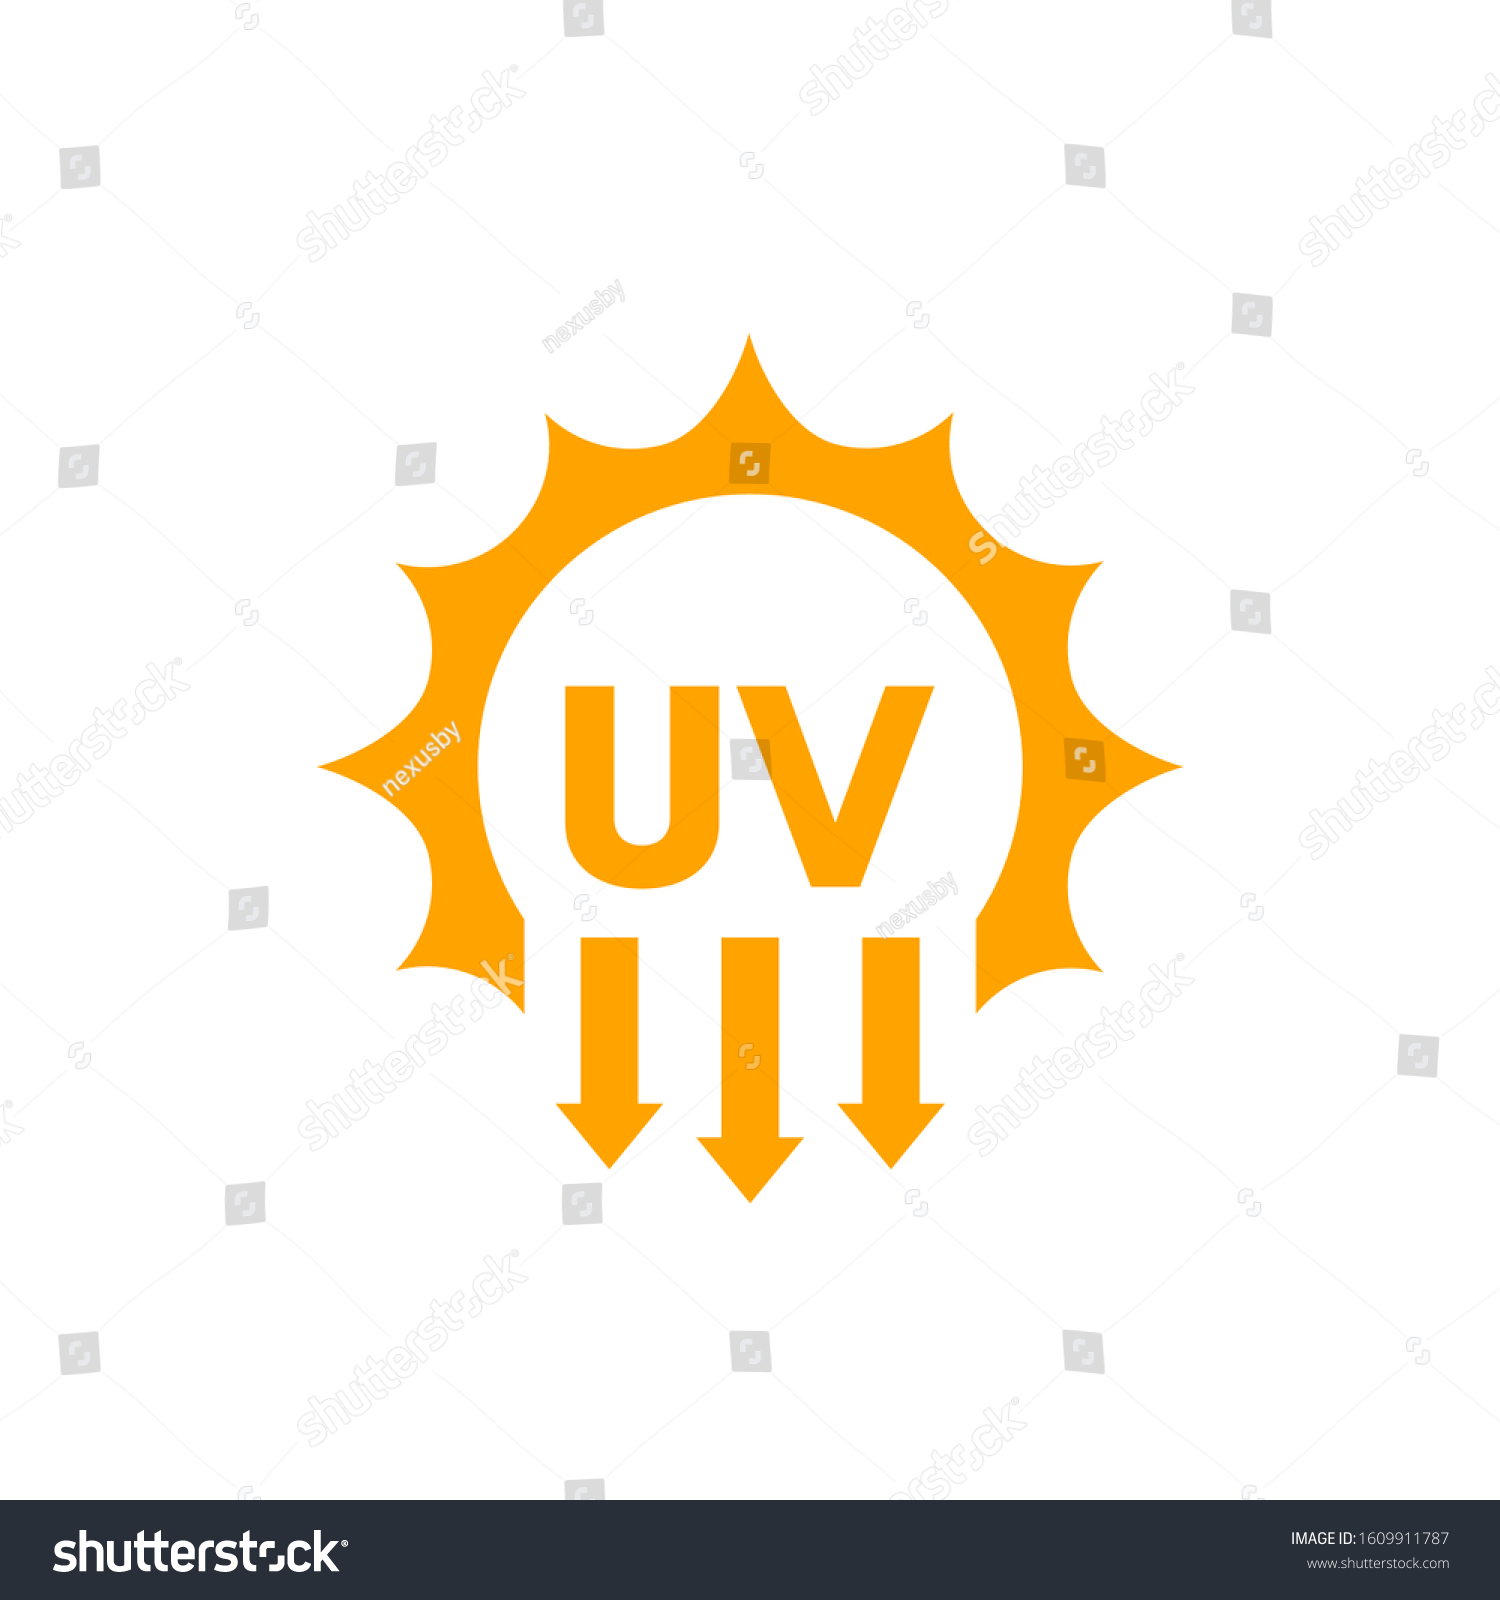 UV radiation, solar ultraviolet light vector icon #1609911787